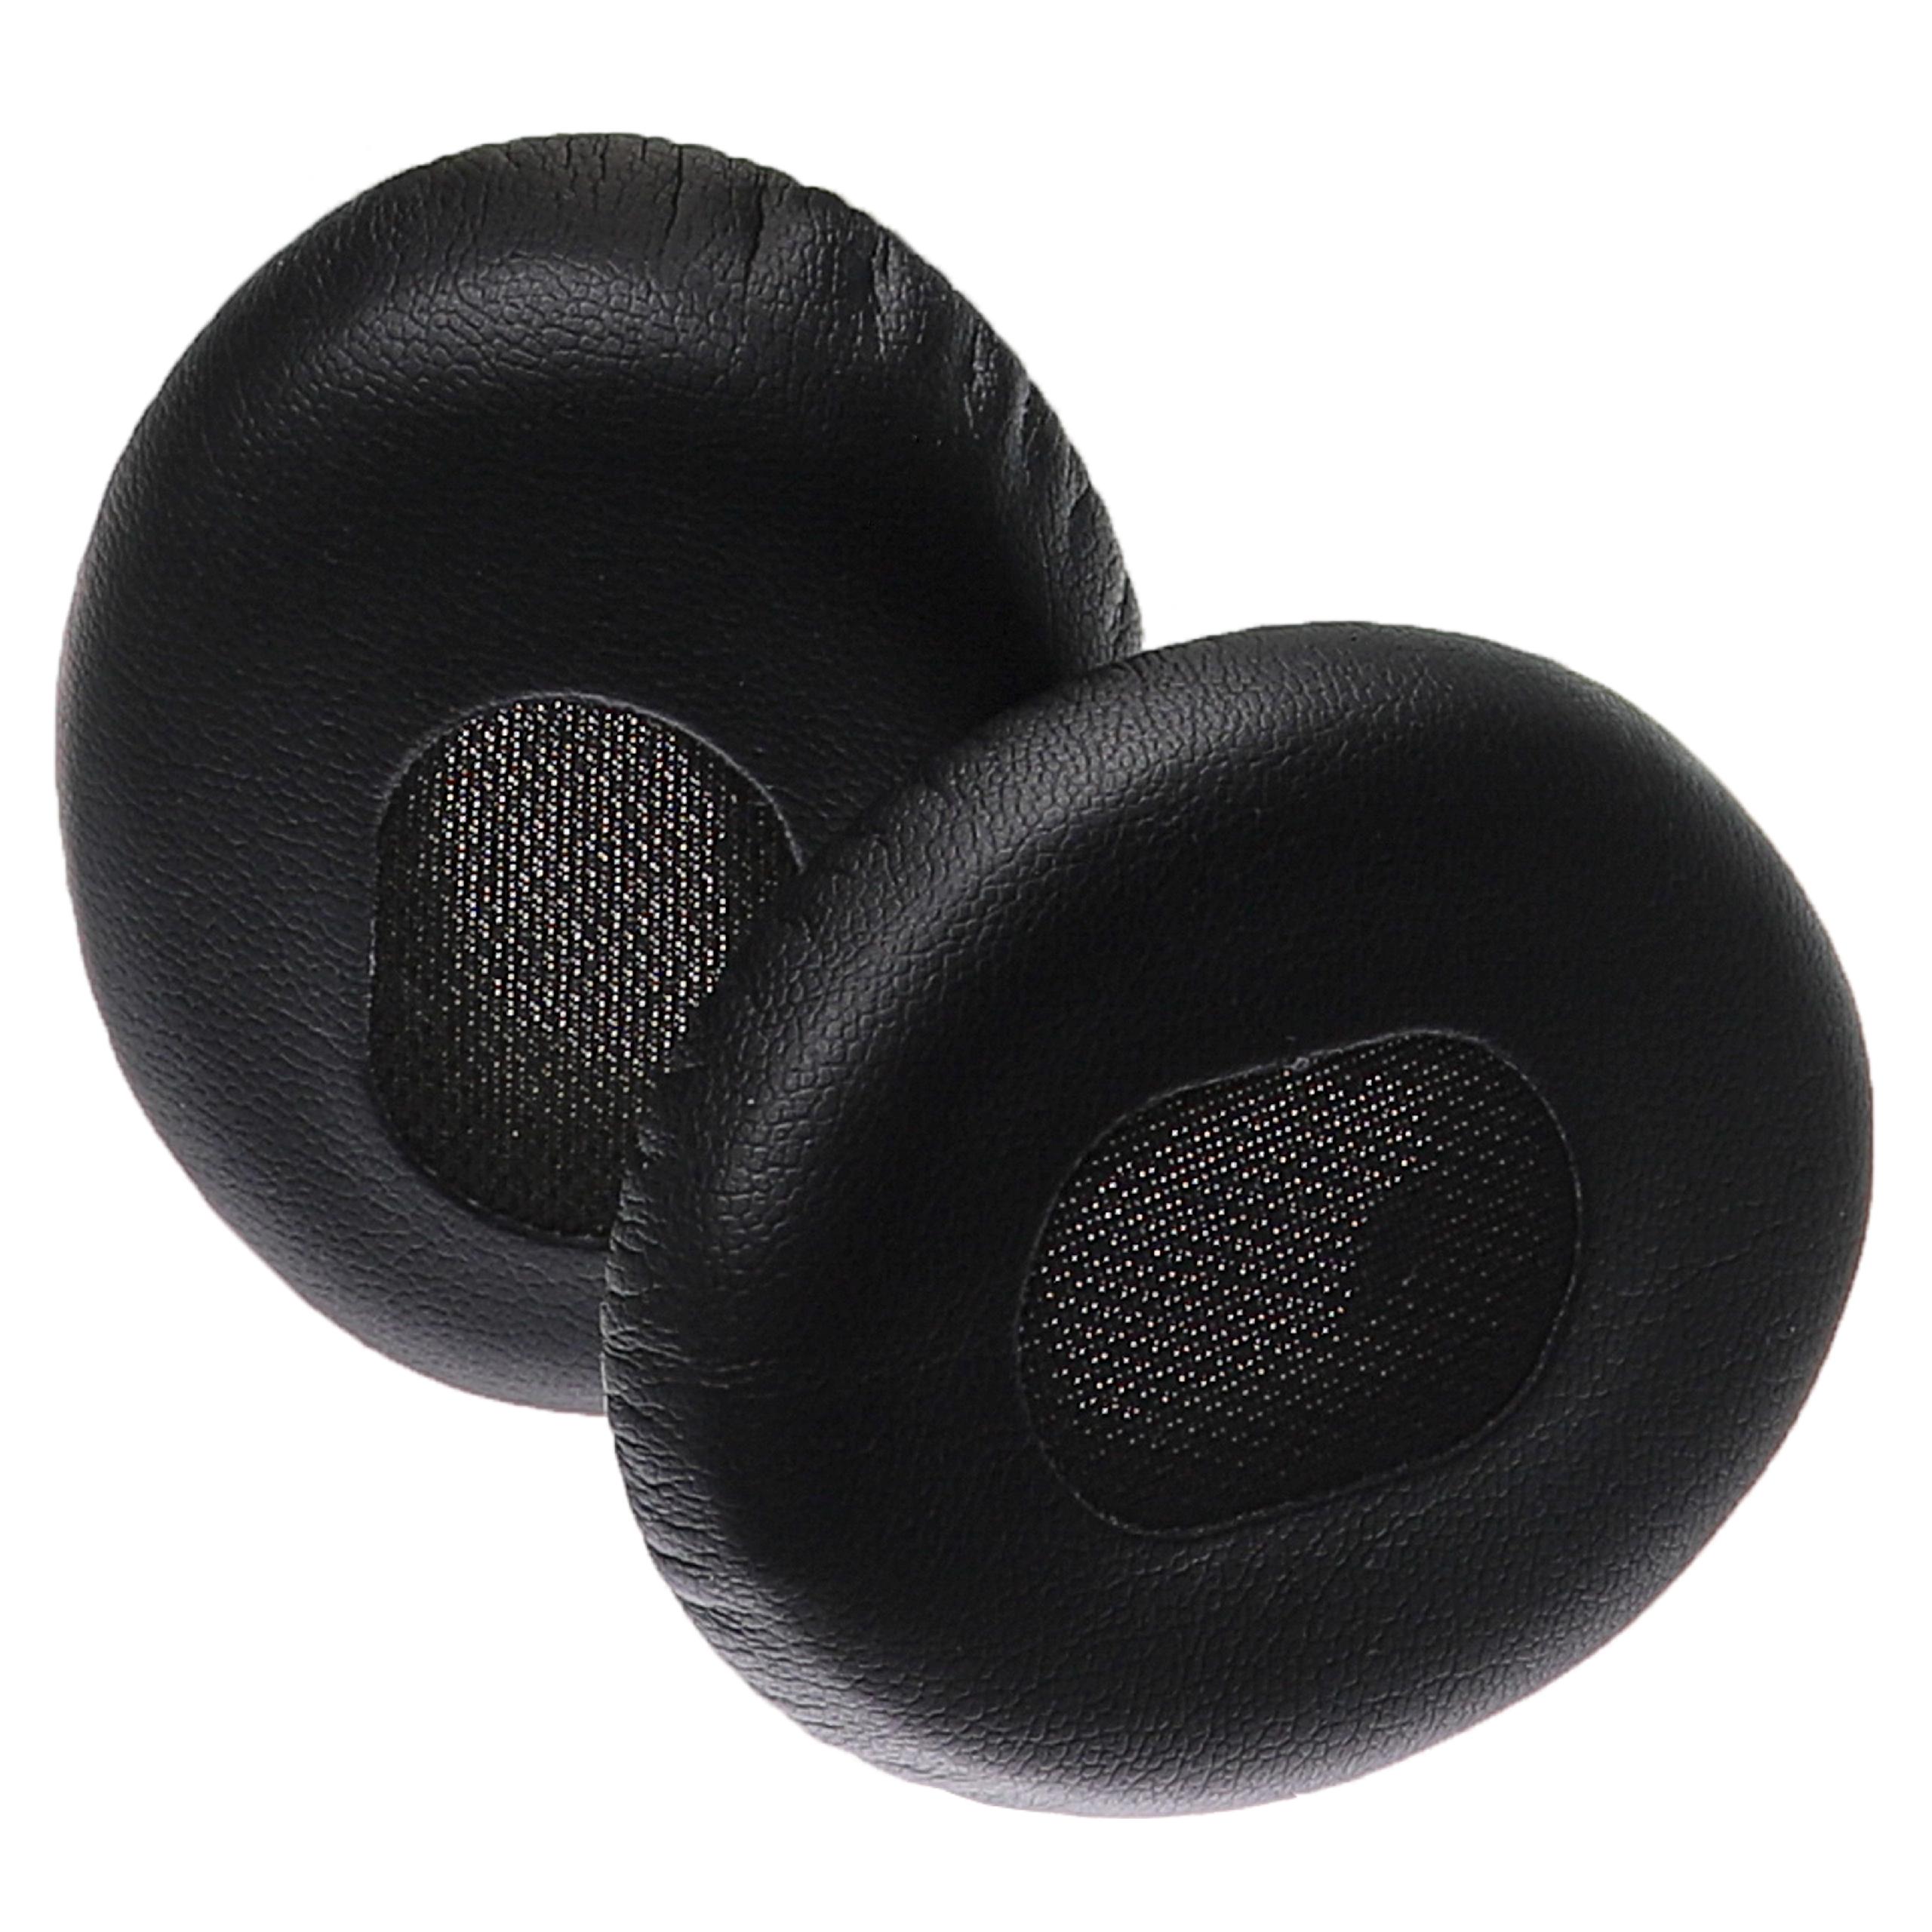 Ohrenpolster für Bose QuietComfort Kopfhörer u.a., 6,9 x 5,6 cm, Schwarz